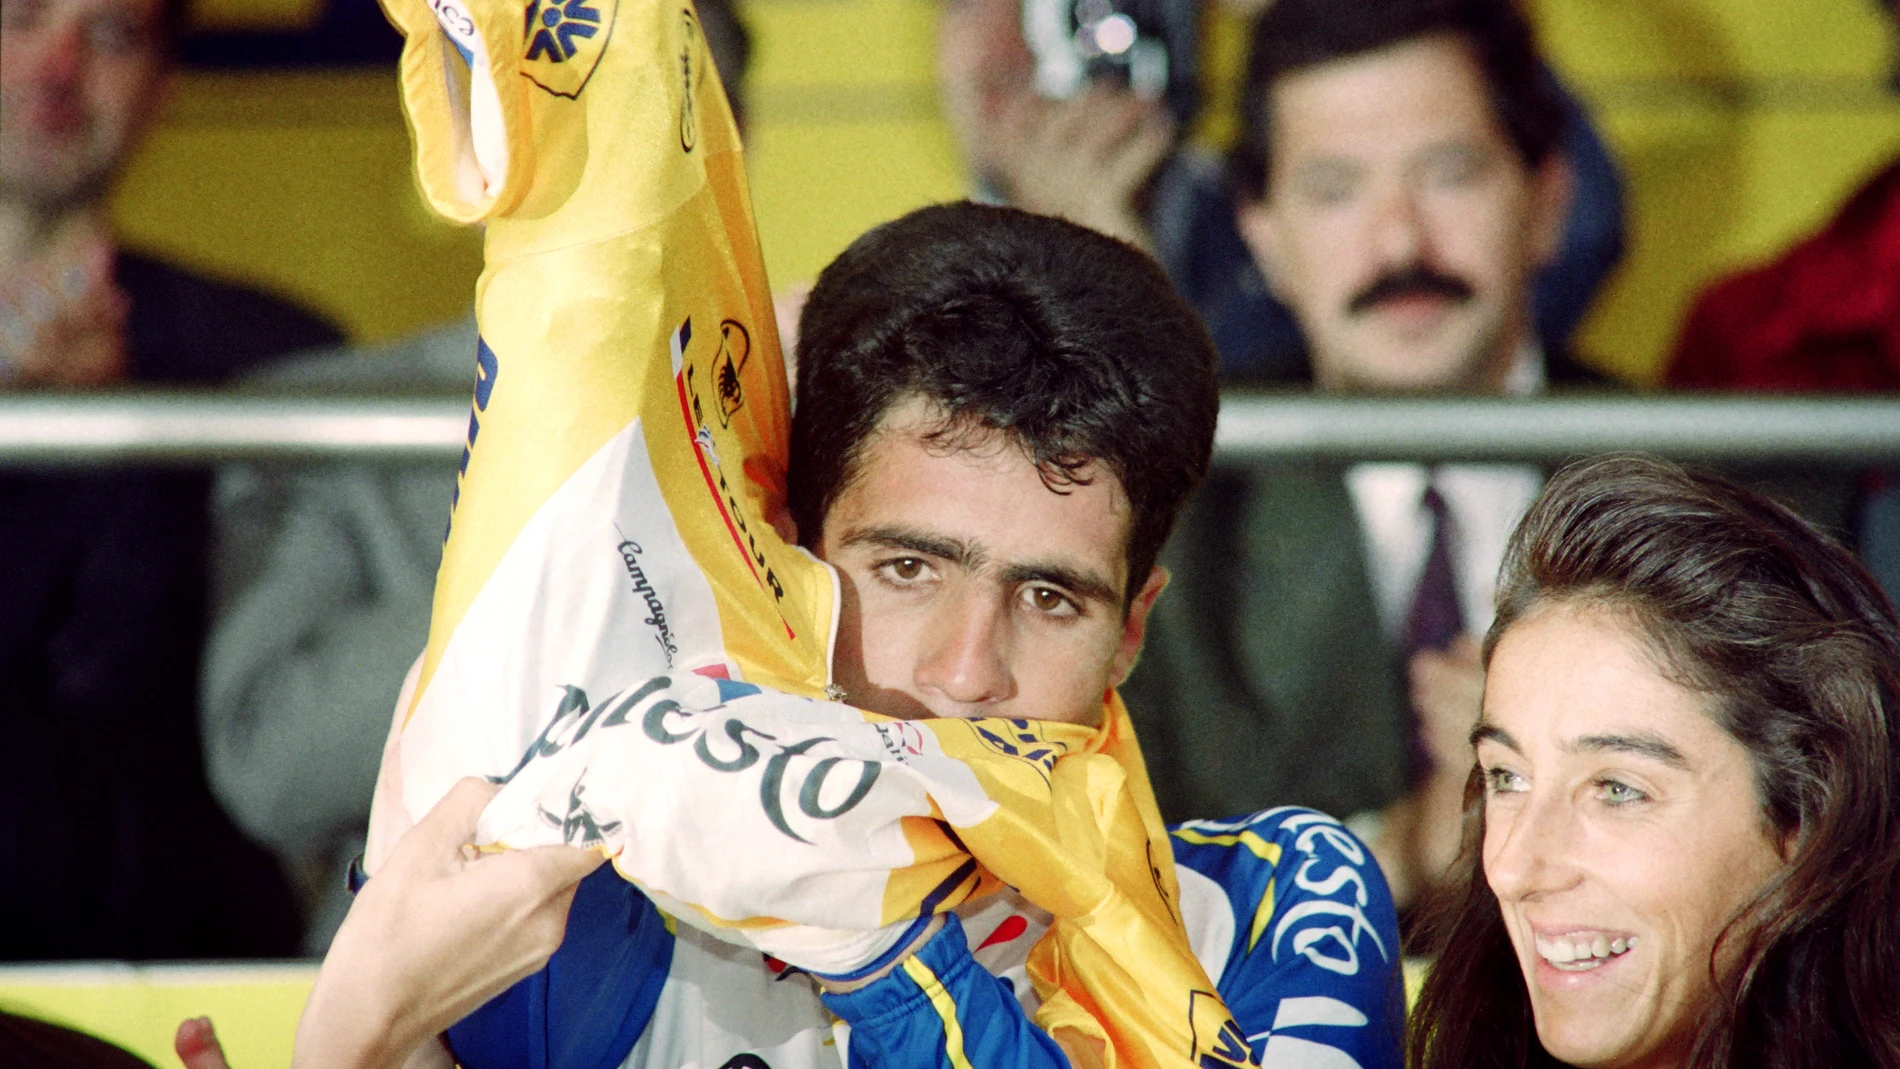 Indurain se pone el maillot amarillo después de su victoria en la prólogo de San Sebastián en 1992